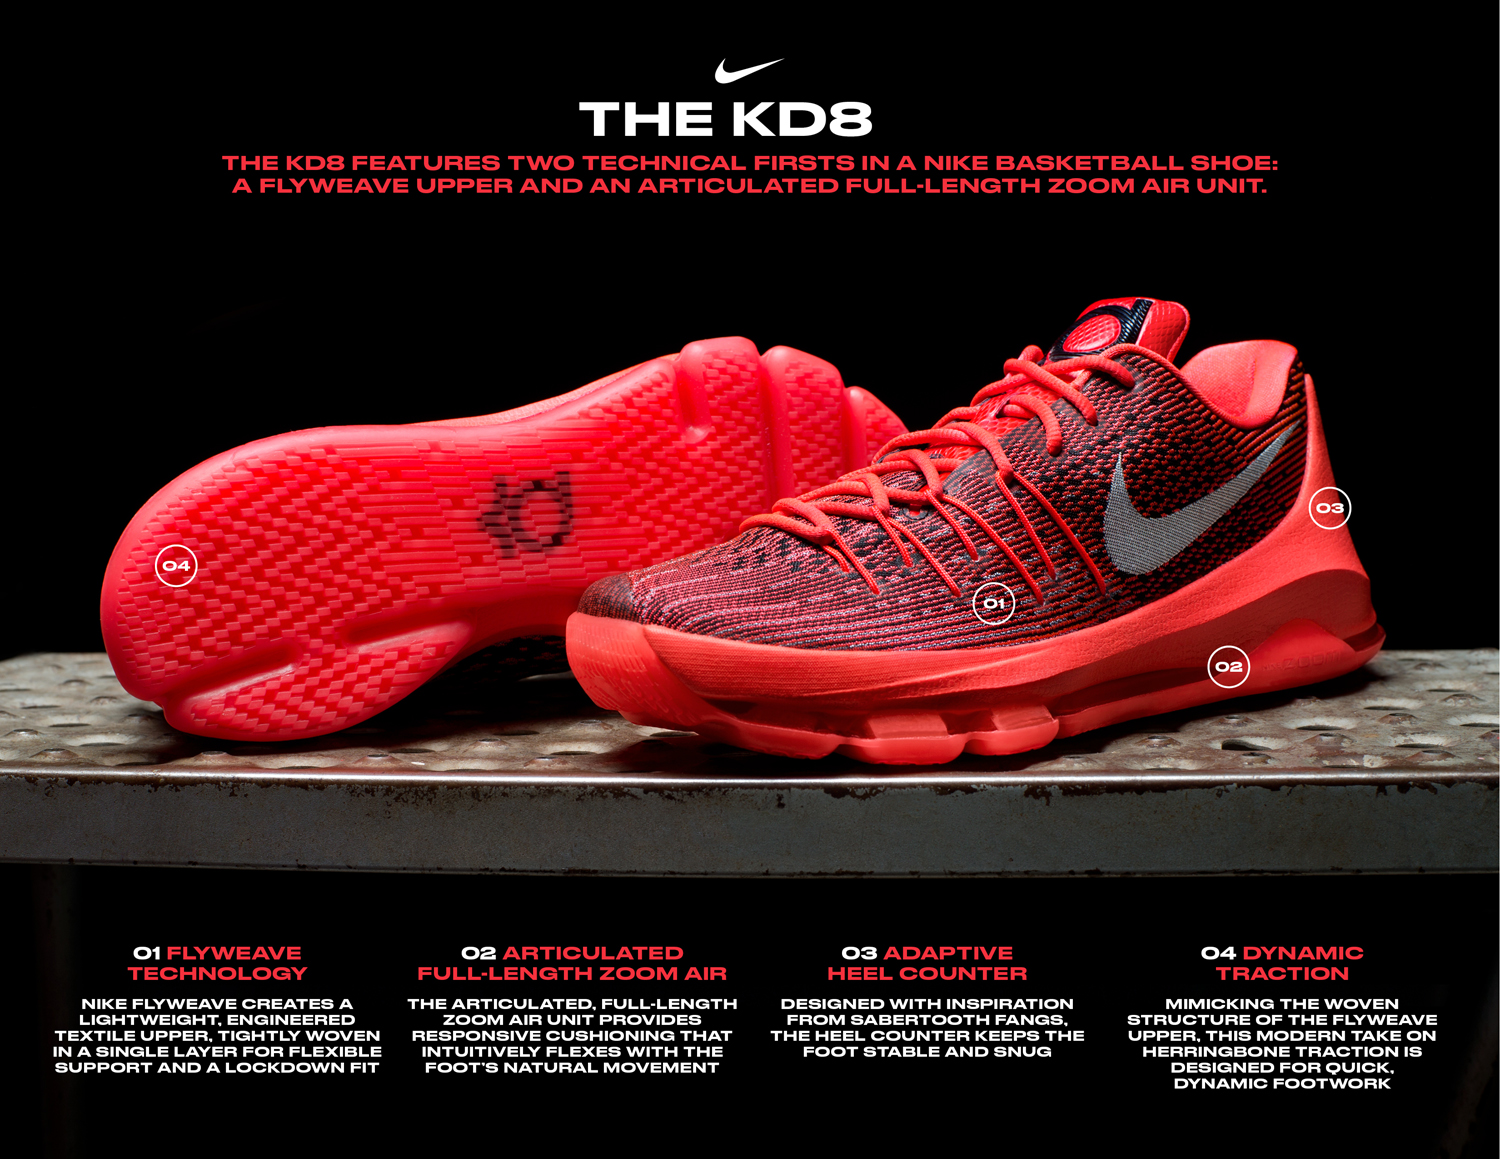 Nike KD 8 Release Date